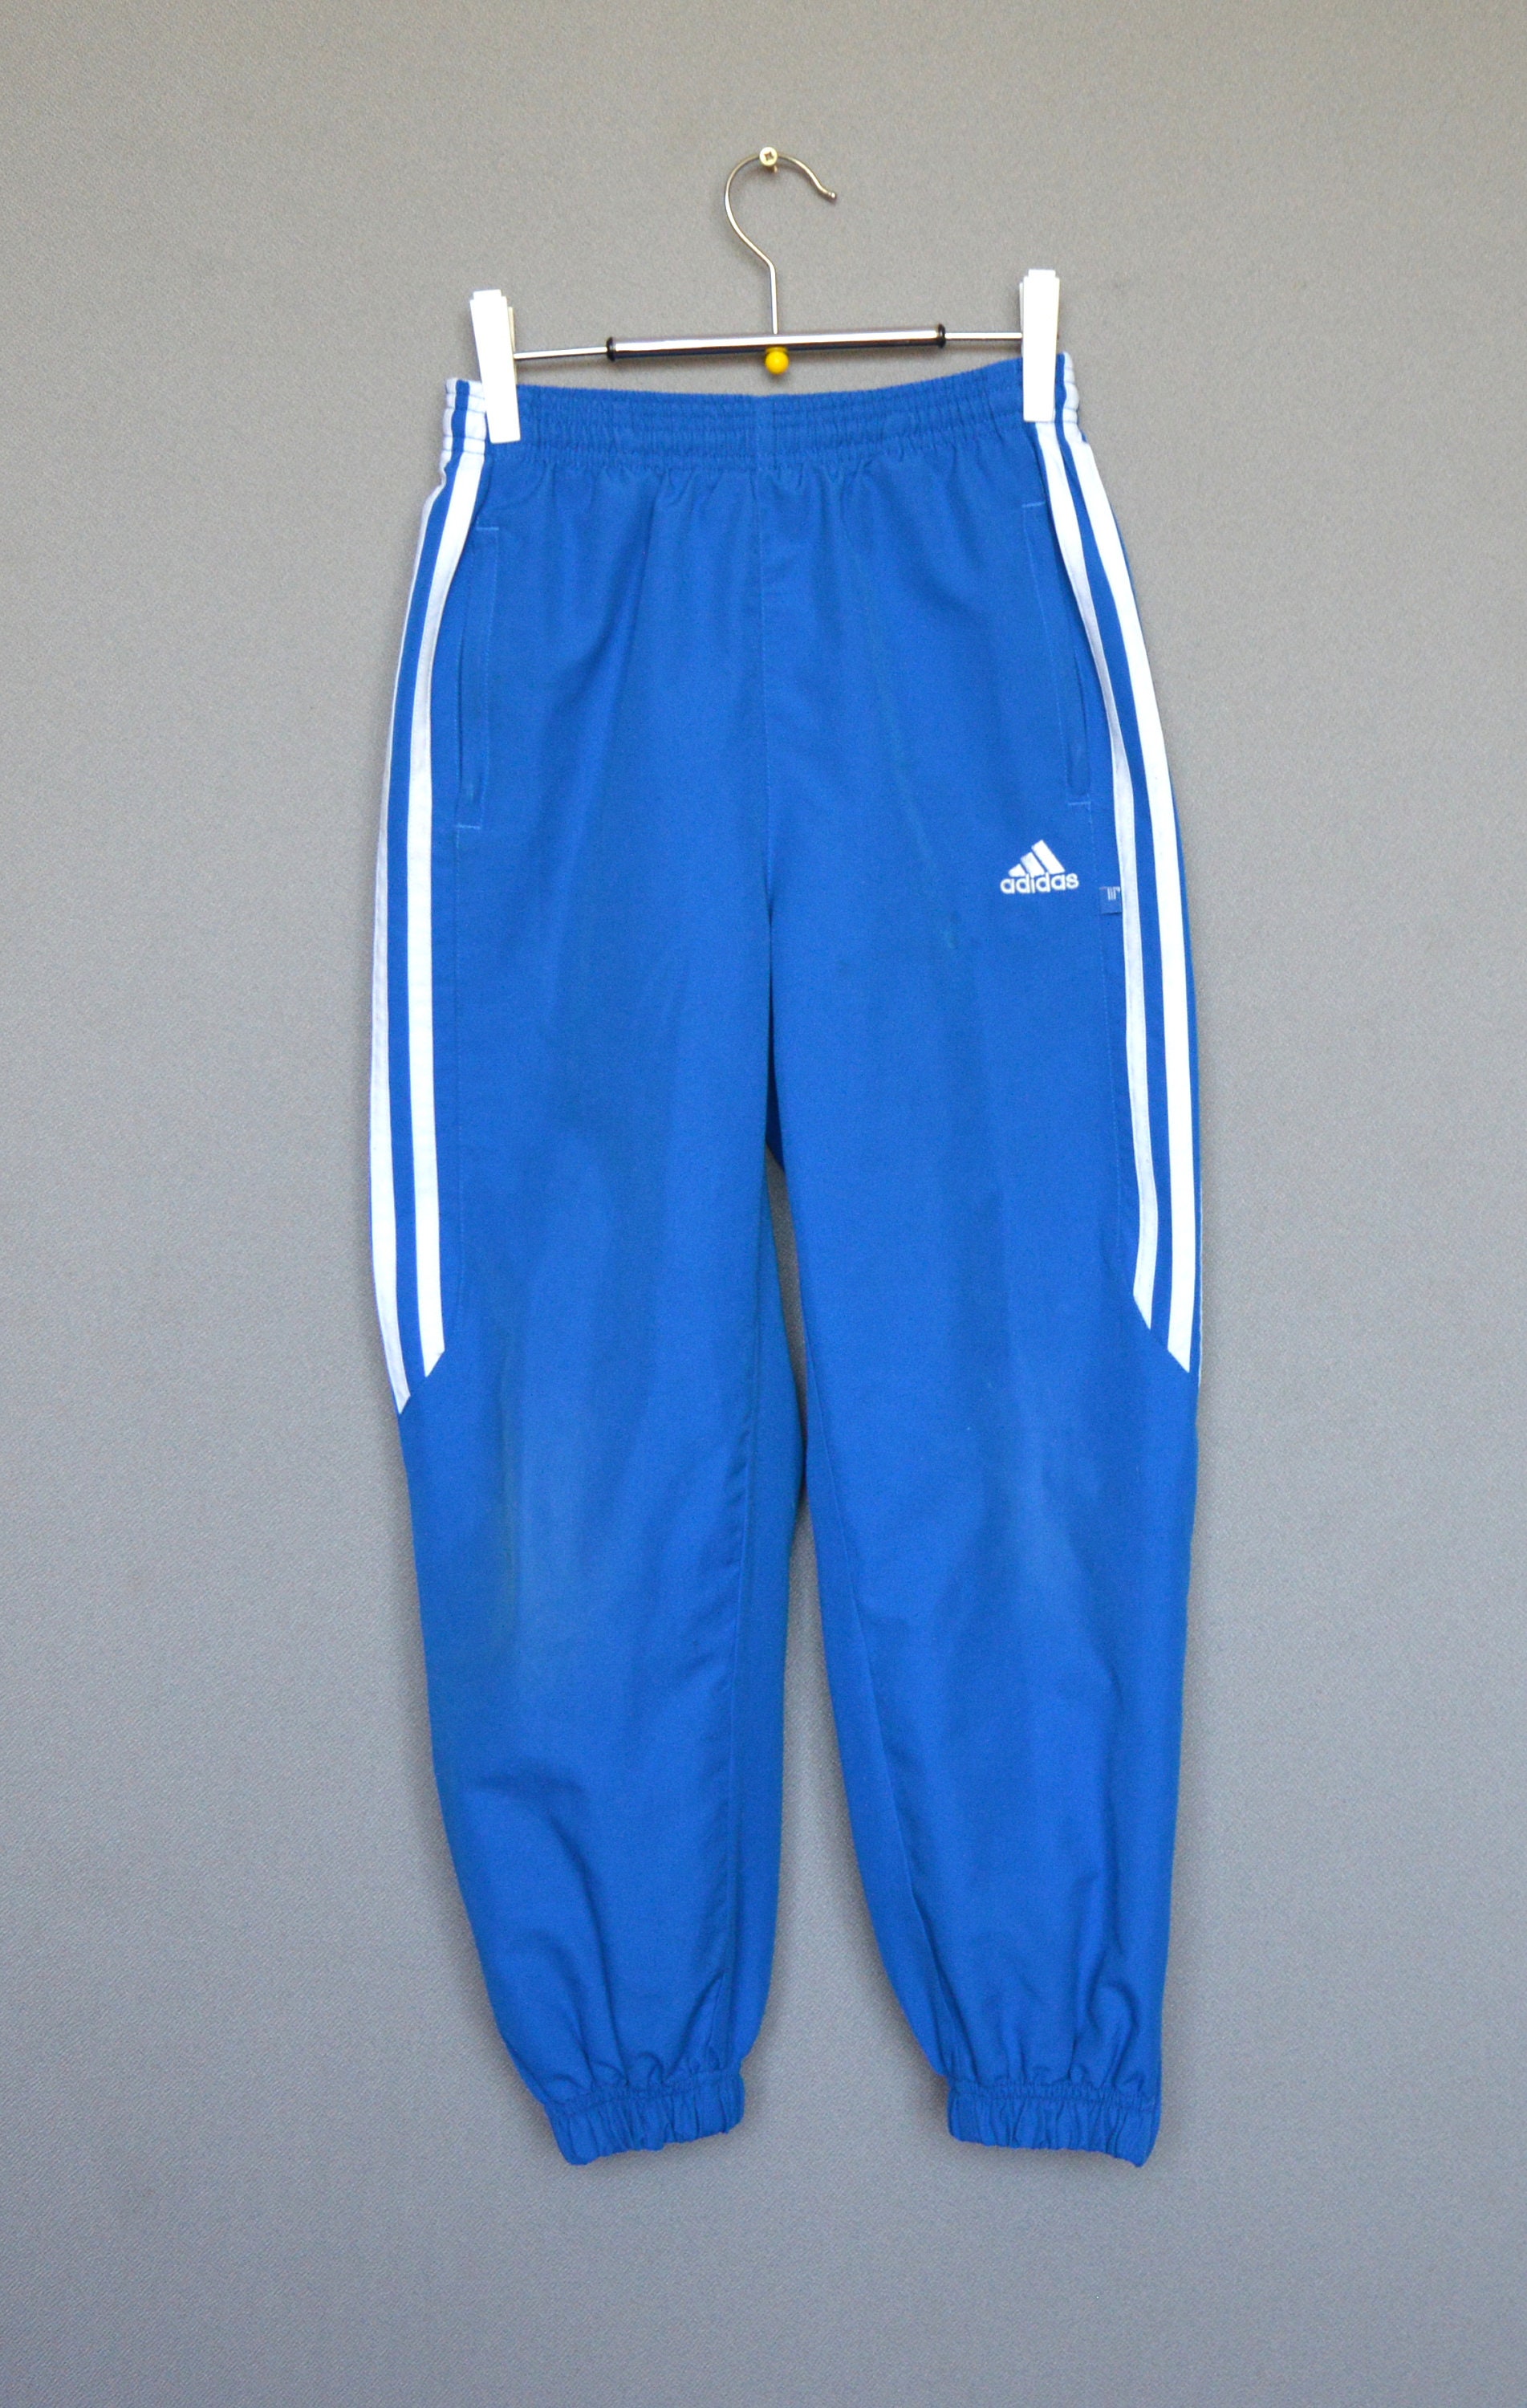 Flyvningen Produkt erektion Vintage Adidas Blue Track Pants Adidas Youth Pants Kids Blue | Etsy